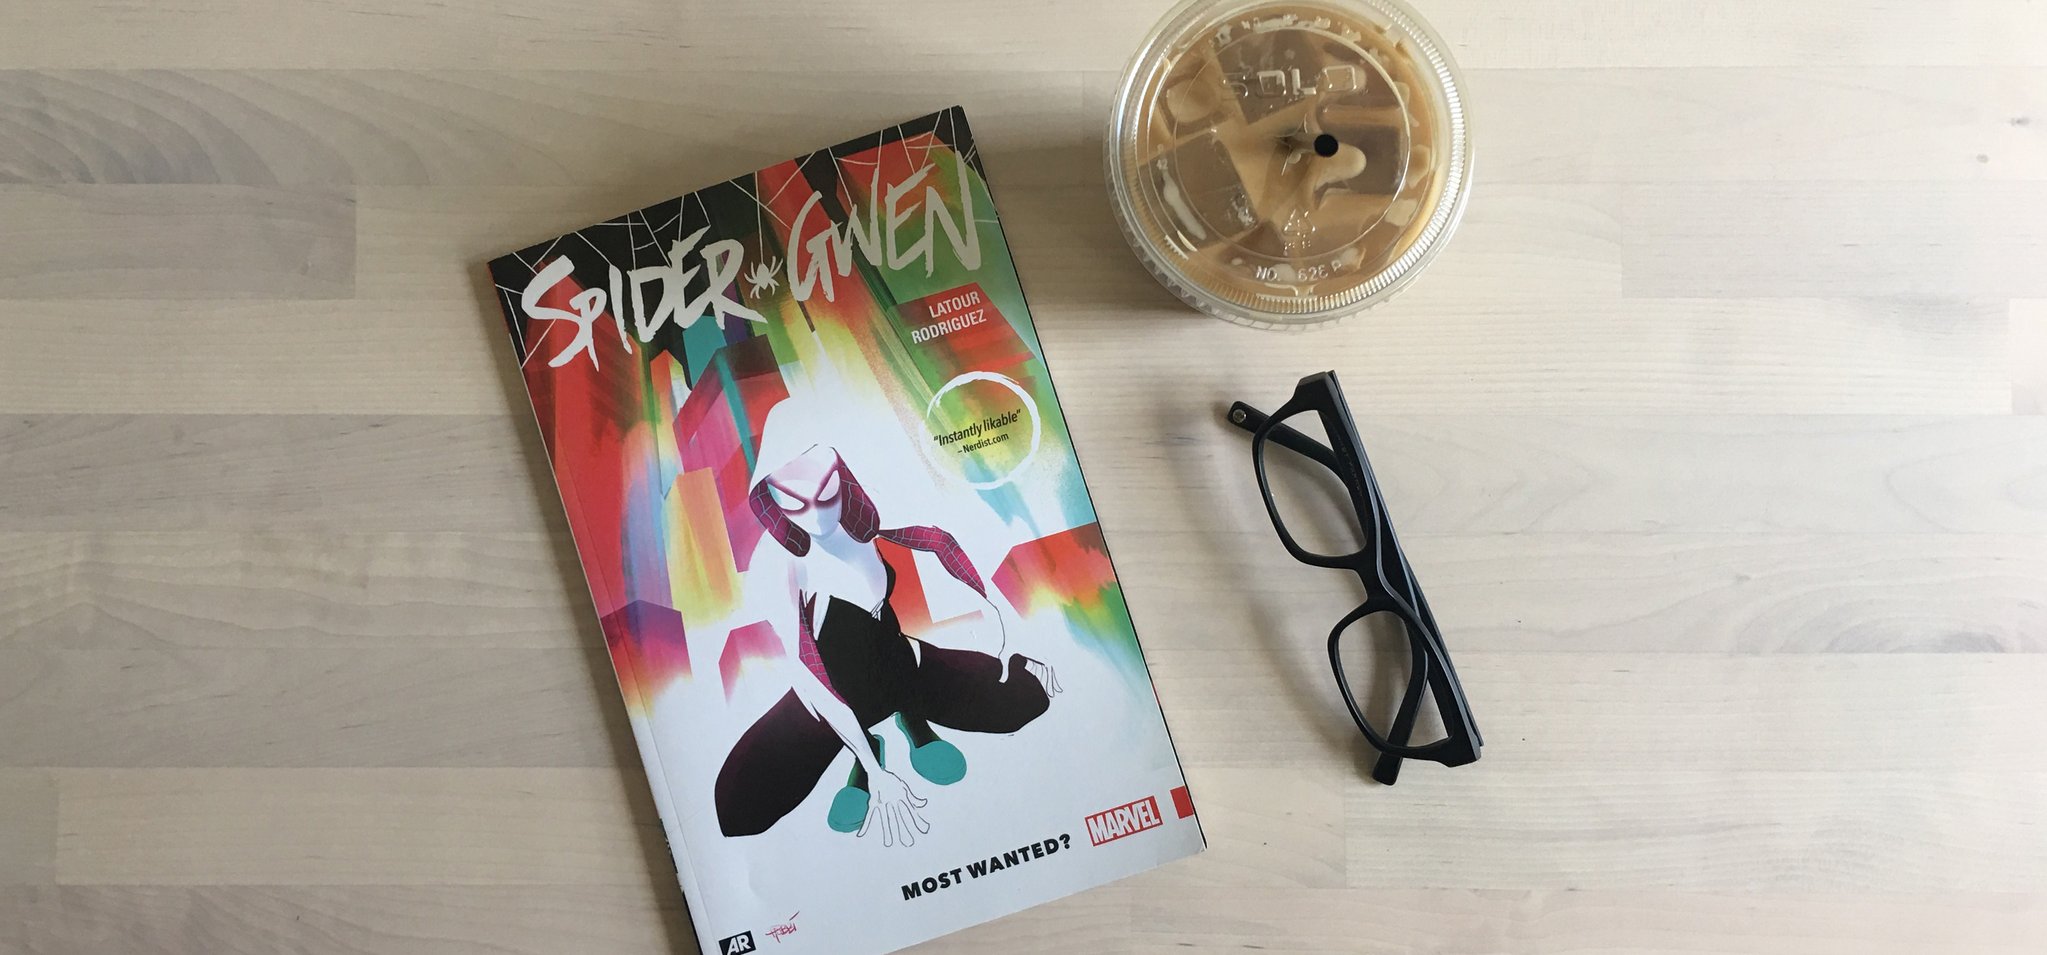 Coffee Break: Spider Gwen Most Wanted